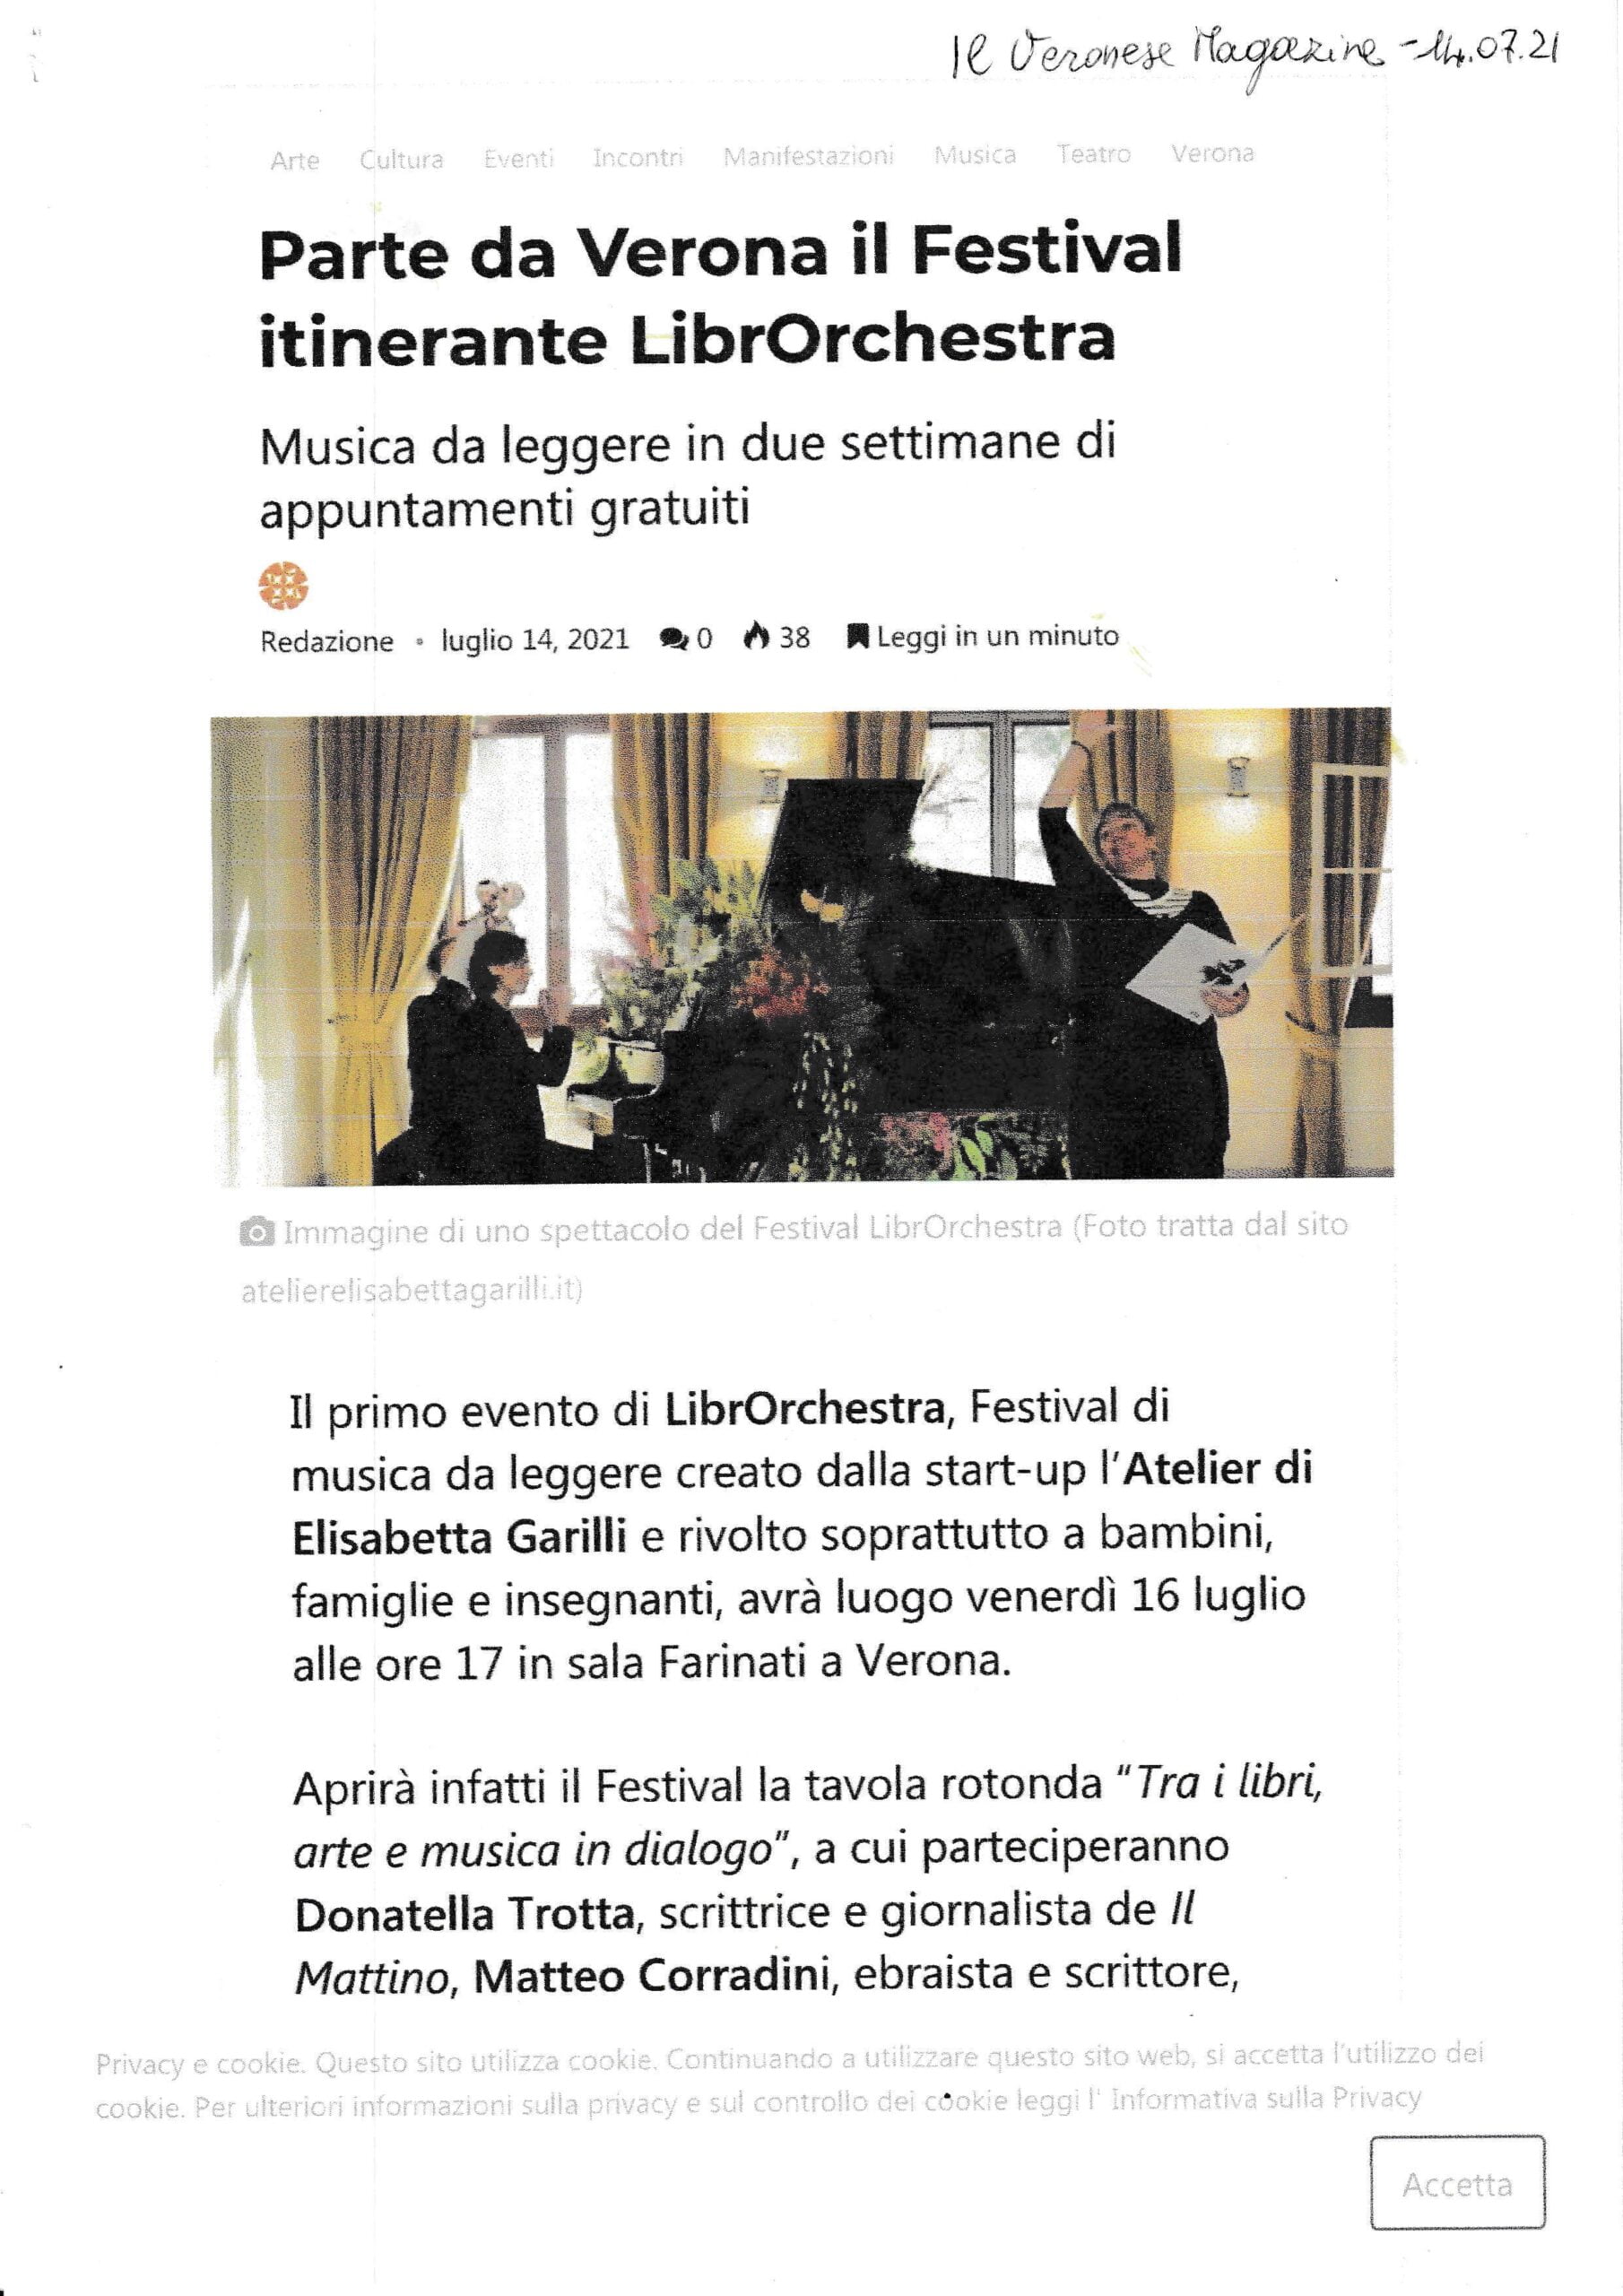 2021.07.14 Il Veronese Magazine Parte da Verona il primo Festival itinerante scaled